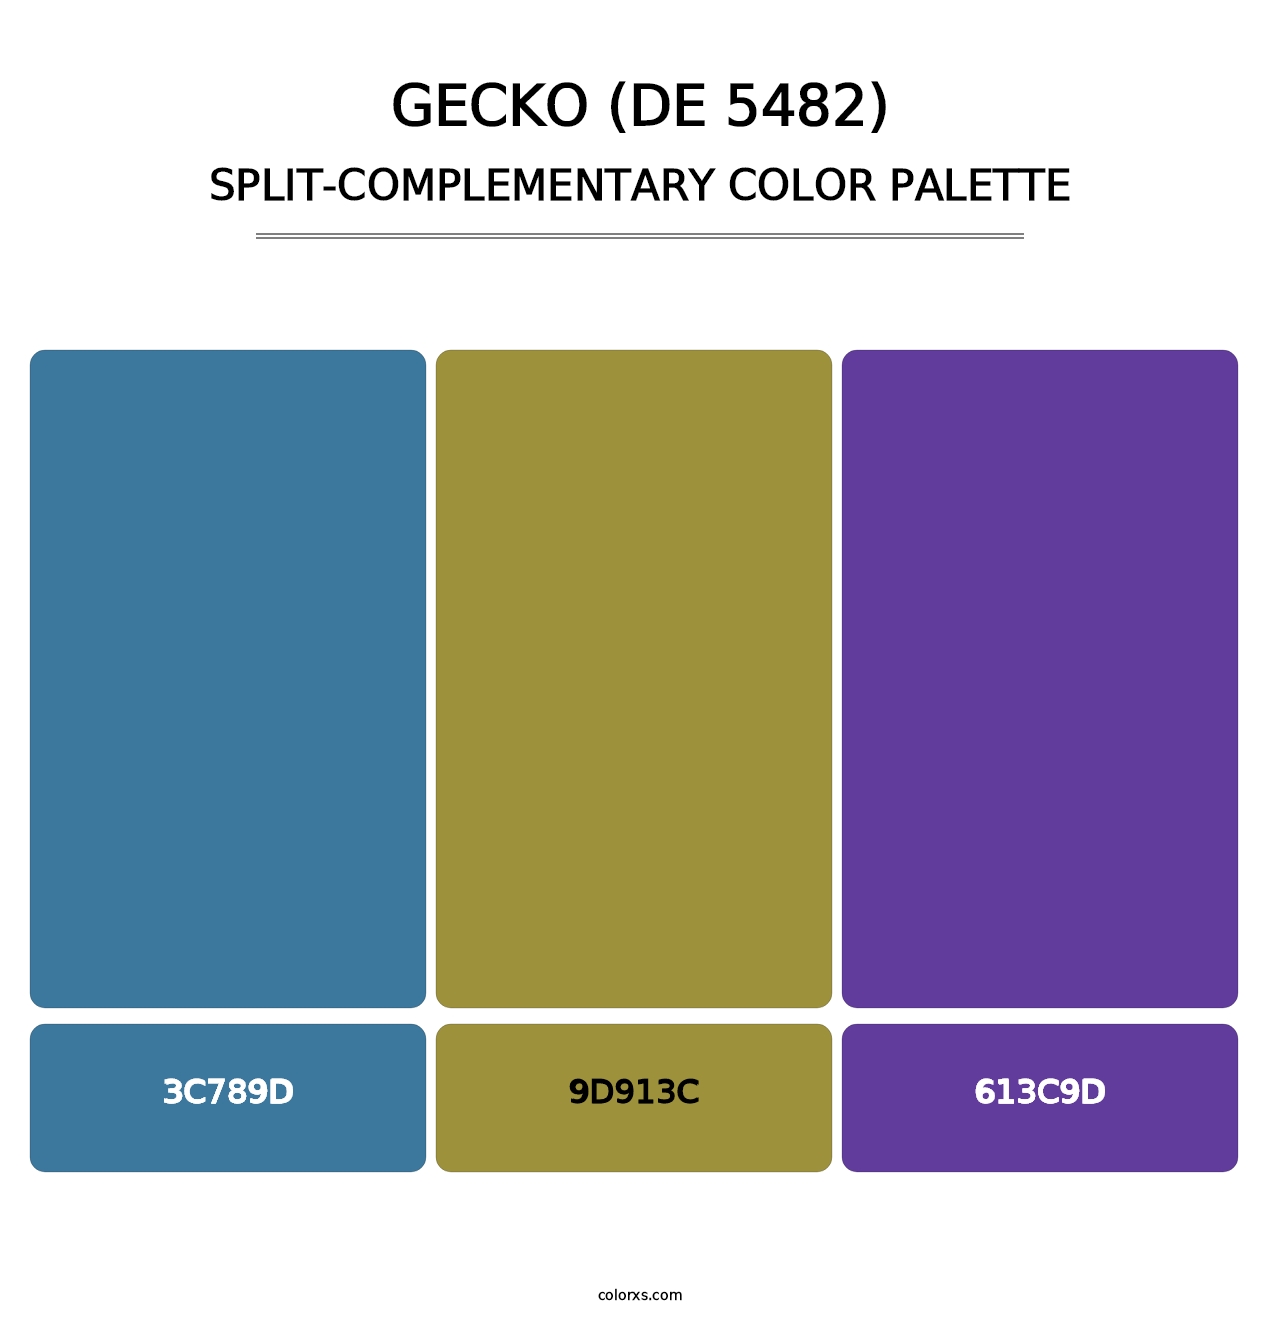 Gecko (DE 5482) - Split-Complementary Color Palette